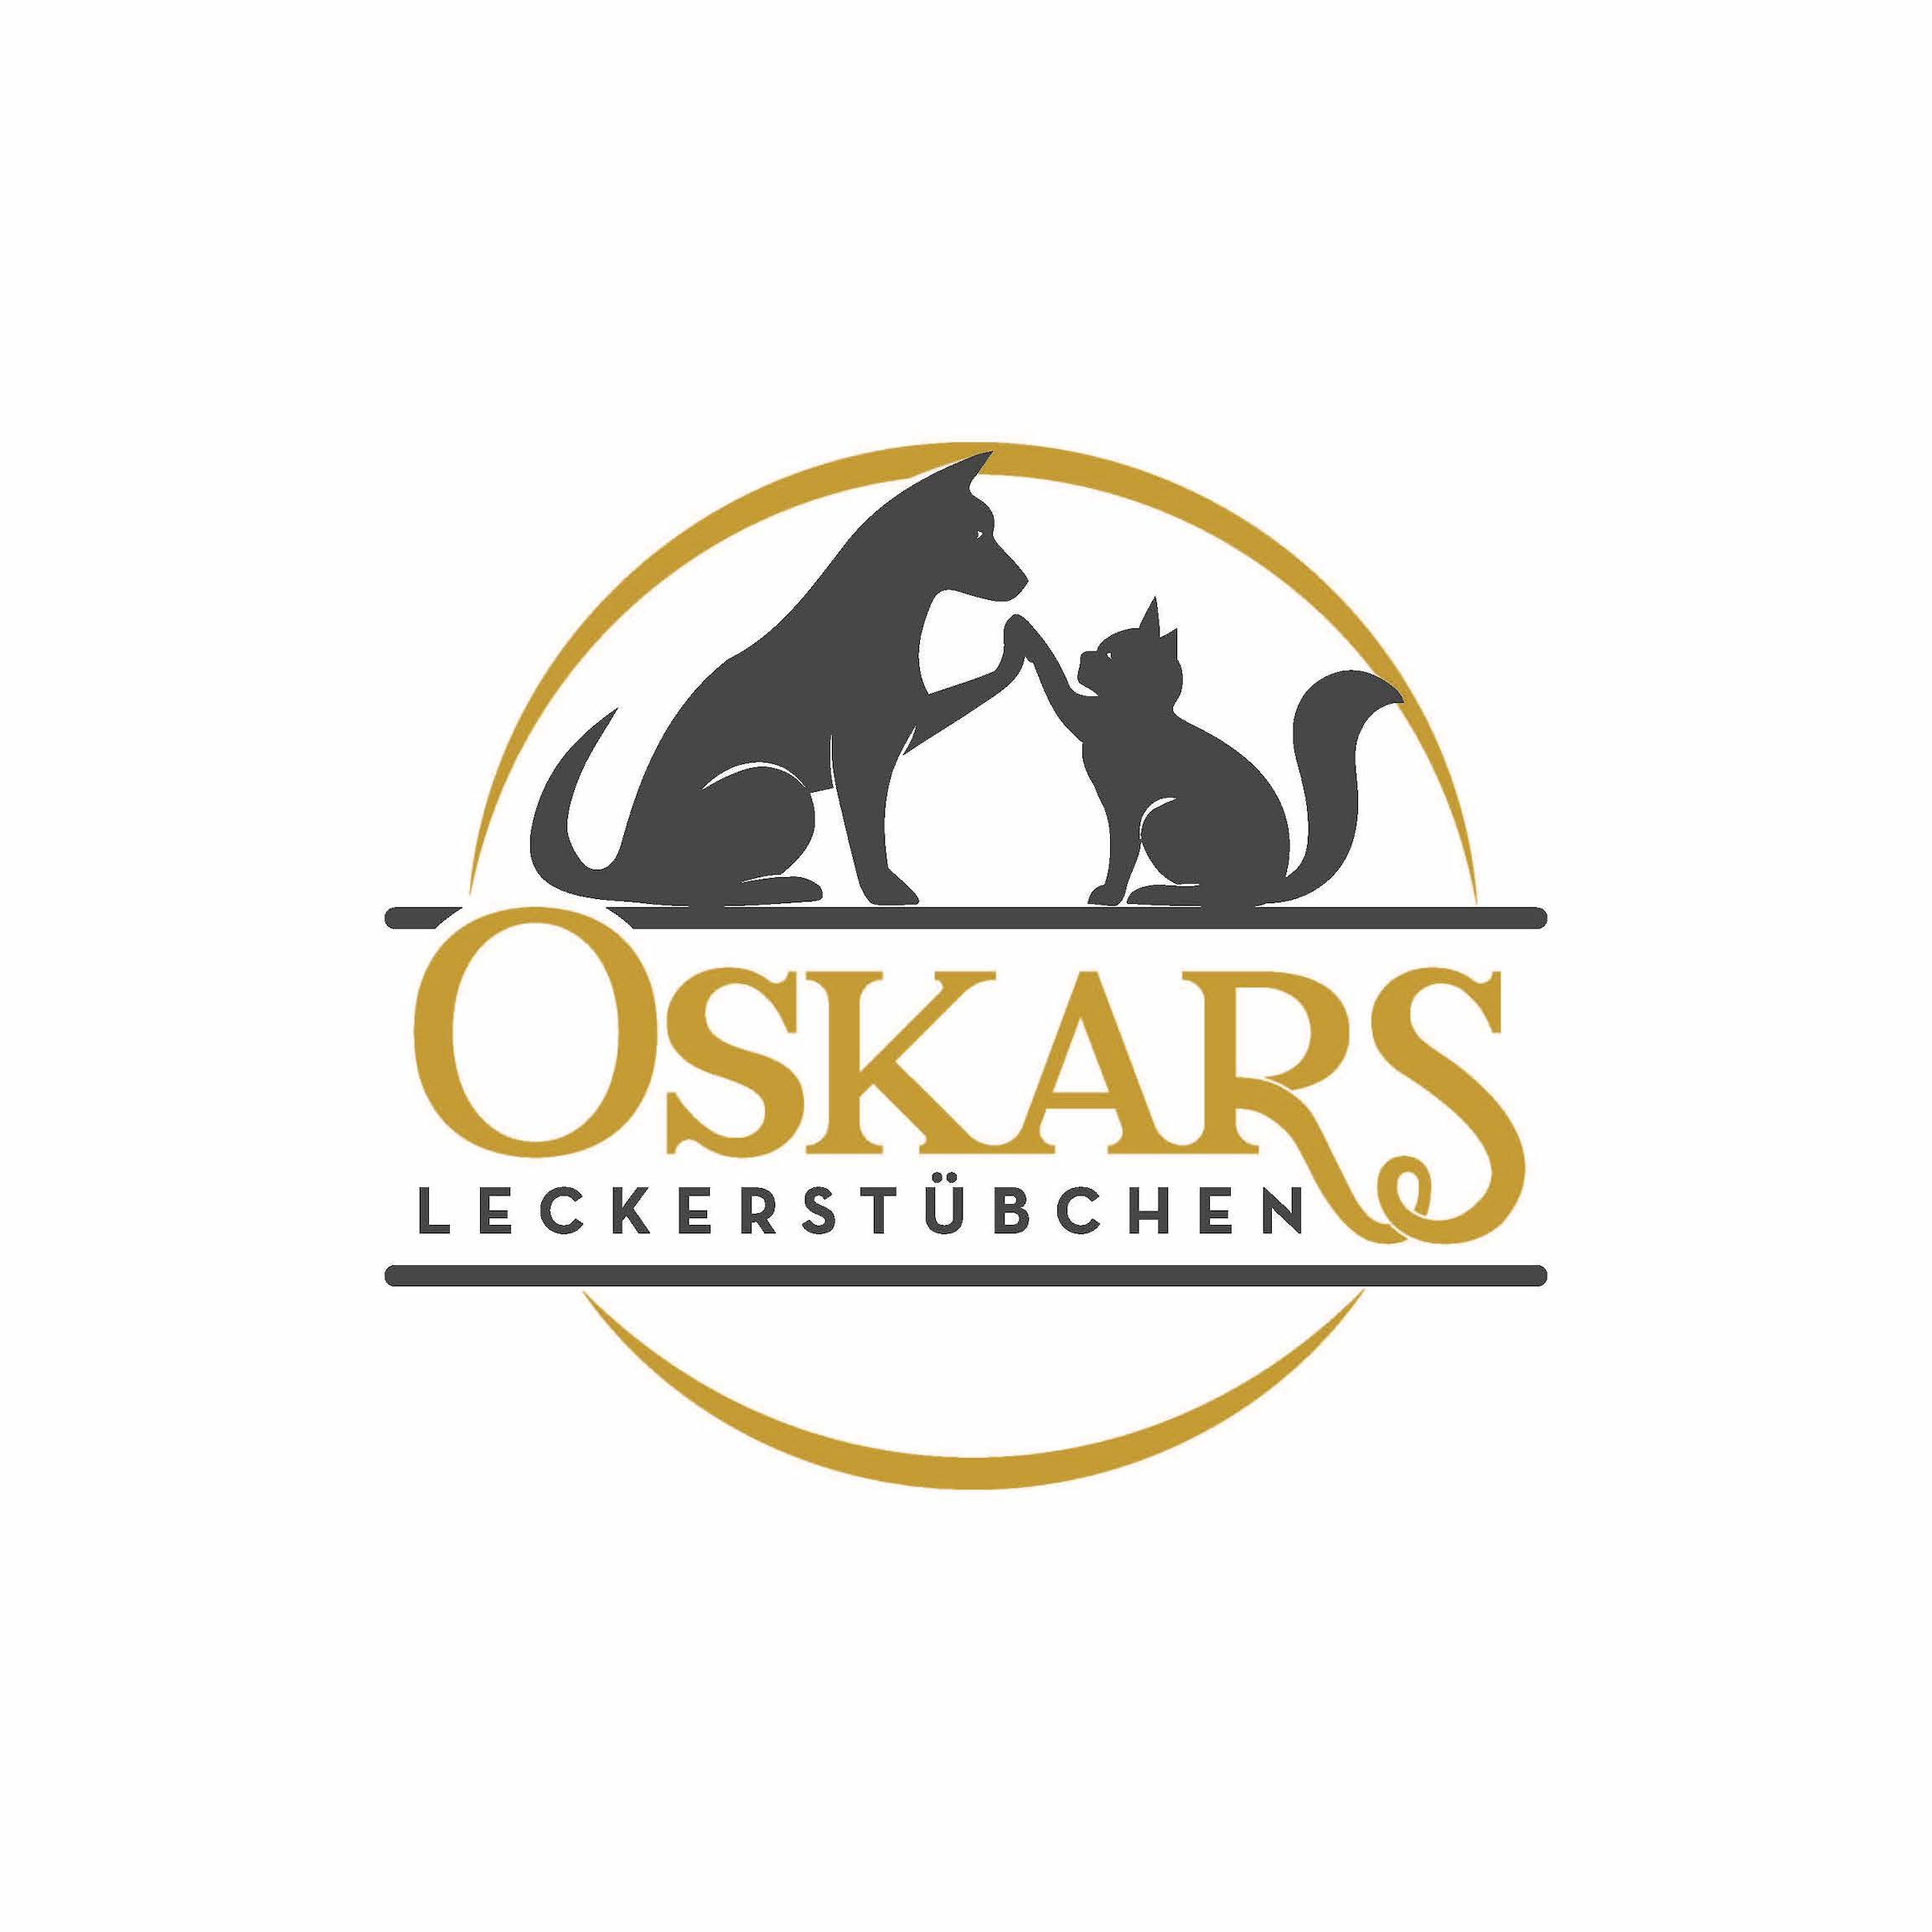 Oskars Leckerstübchen - Logo